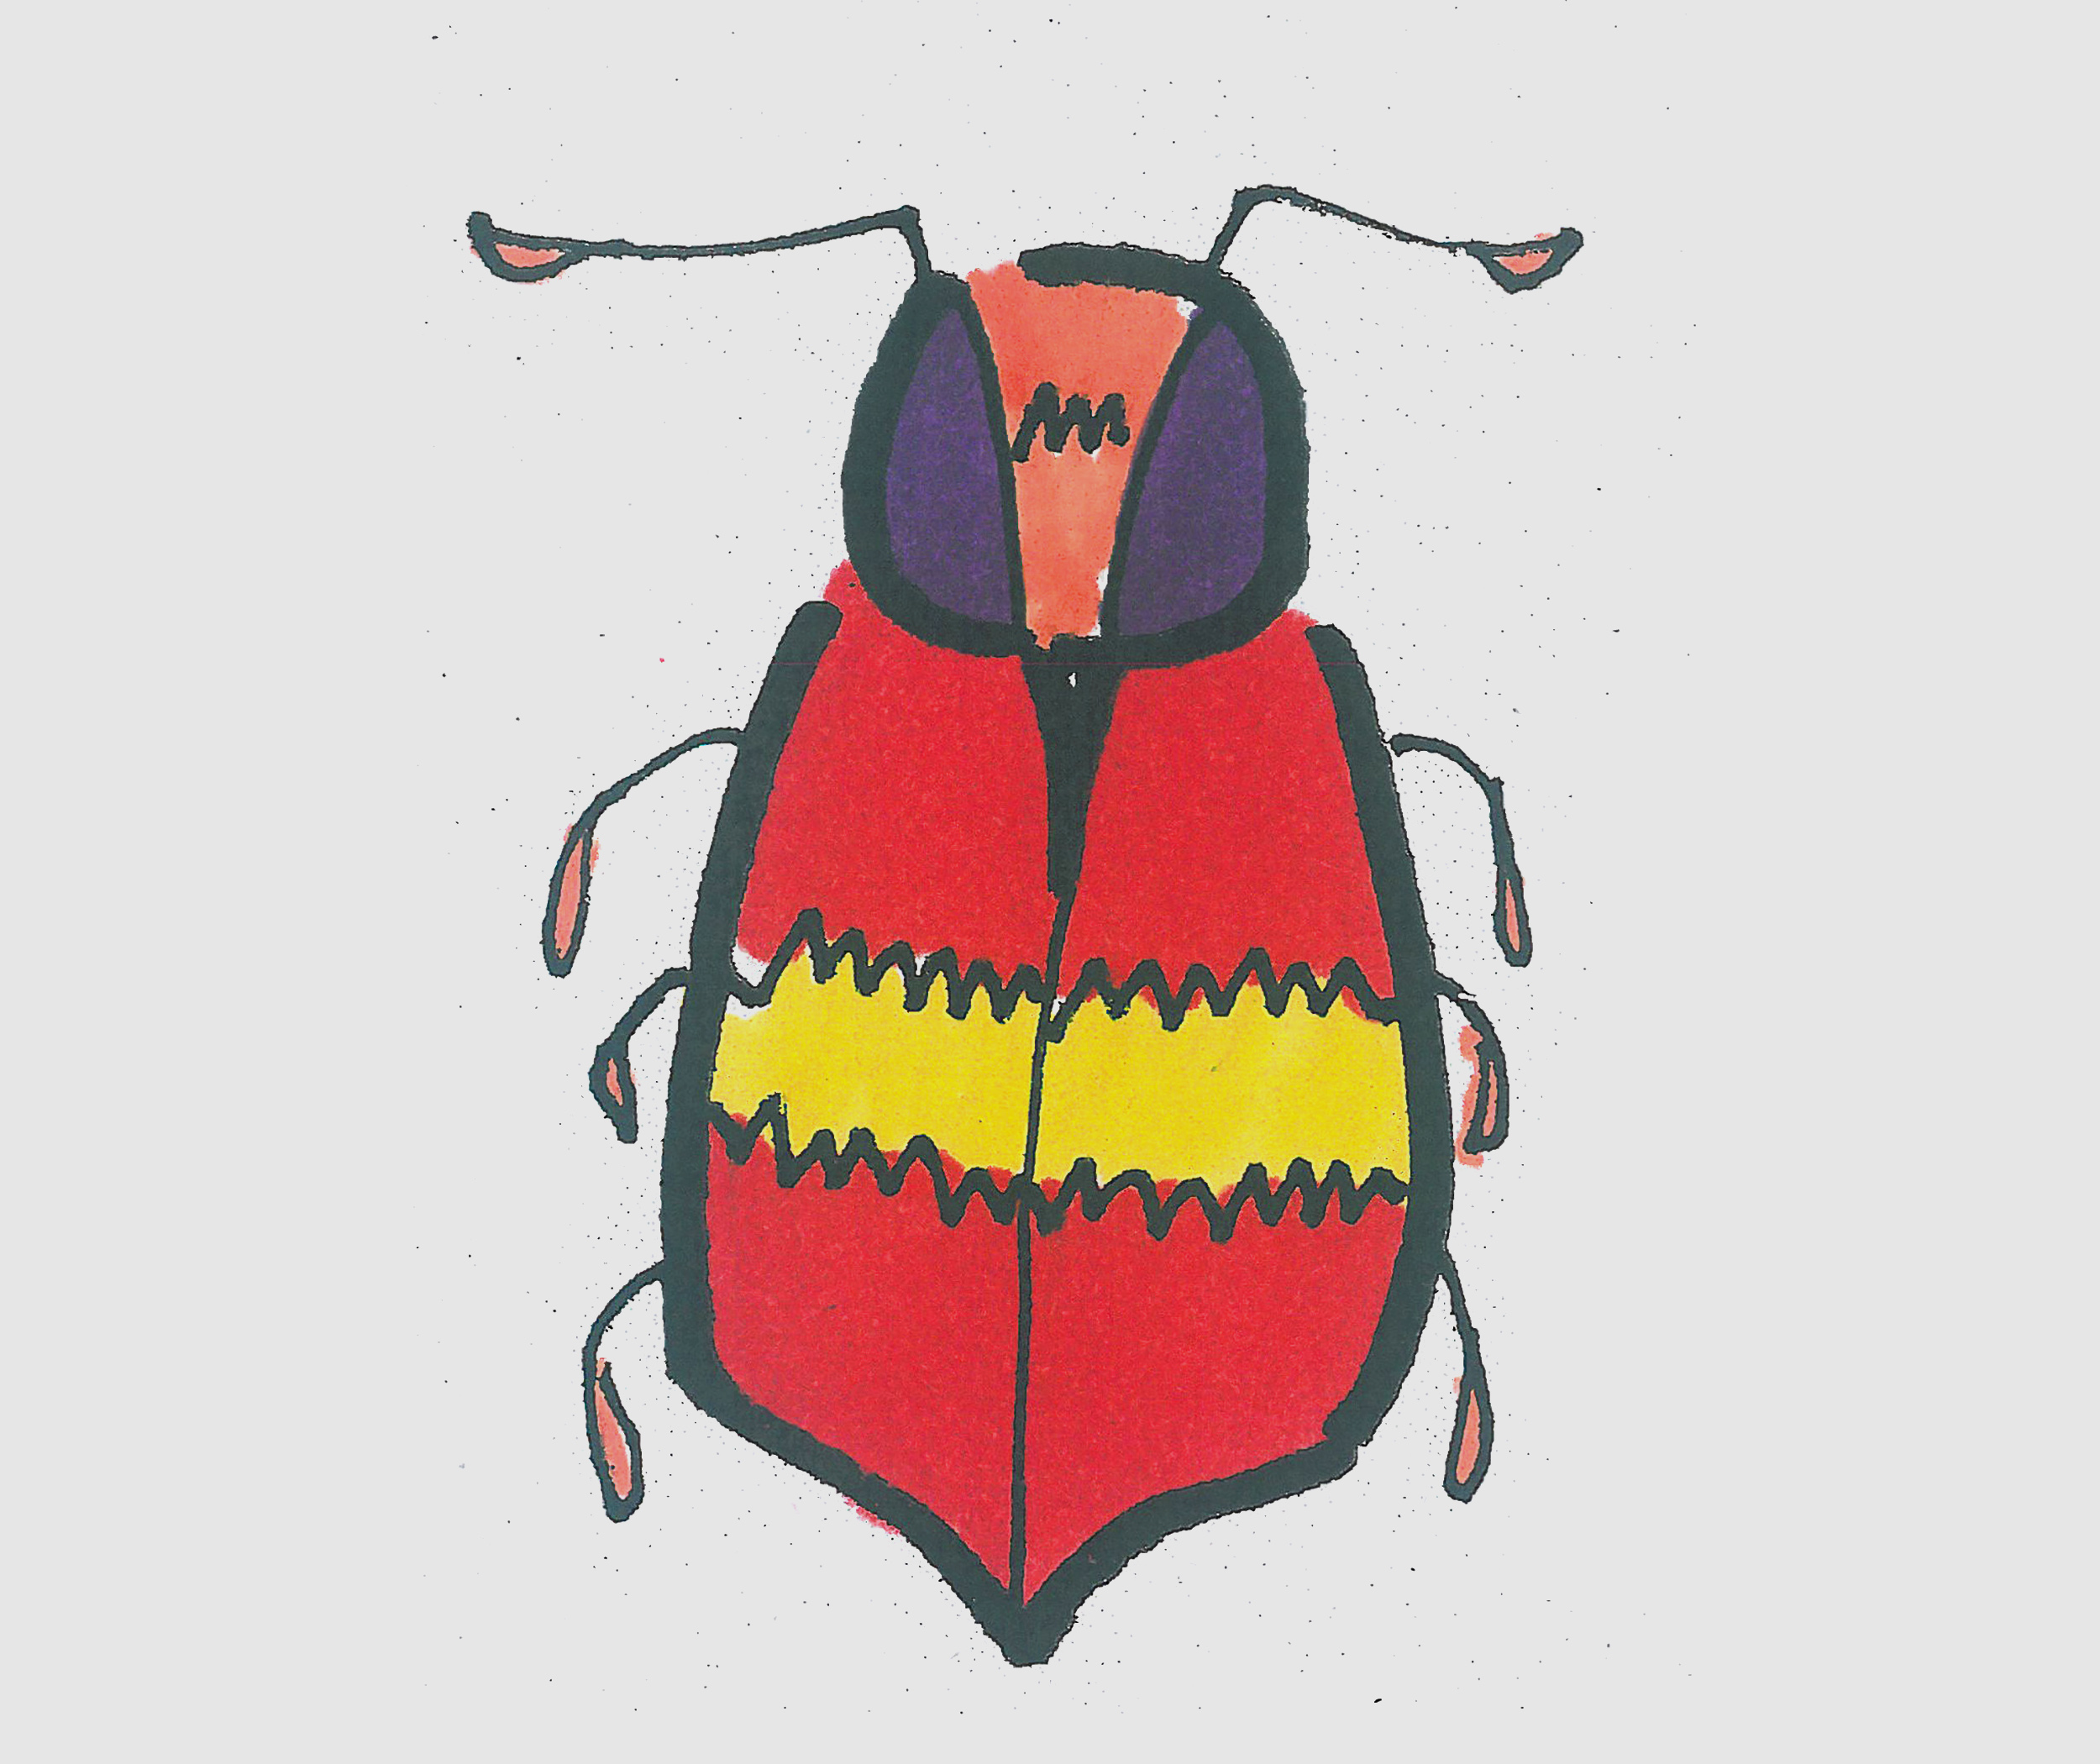 儿童简笔画带颜色甲虫 一步一步教可爱小甲虫画法